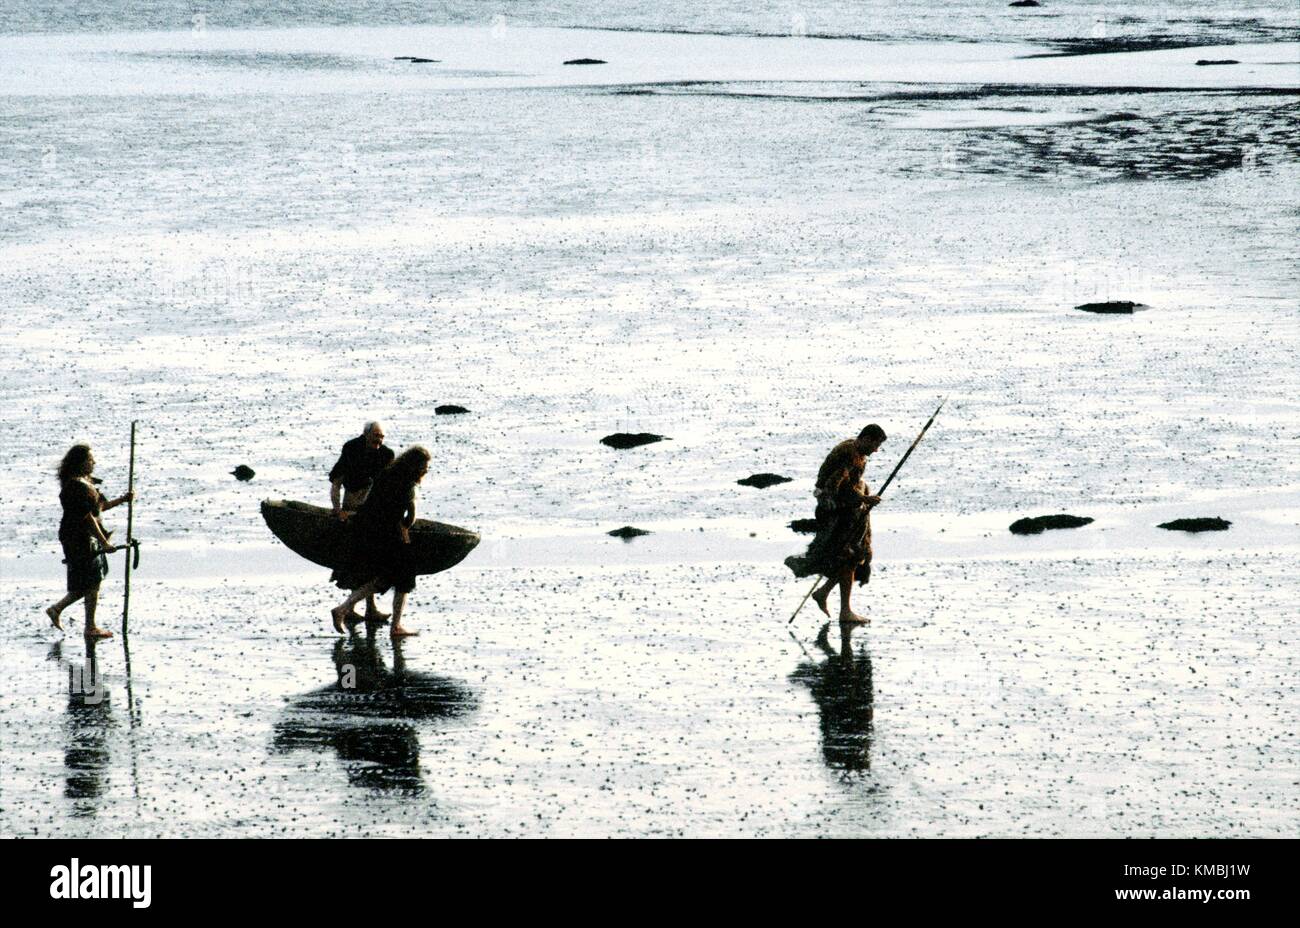 Neolithische Höhle Urmenschen Caveman Höhlenmenschen Mann zu Fuß auf Wattenmeer Küste tragen Haut Boot Coracle Curragh und Speere Stockfoto